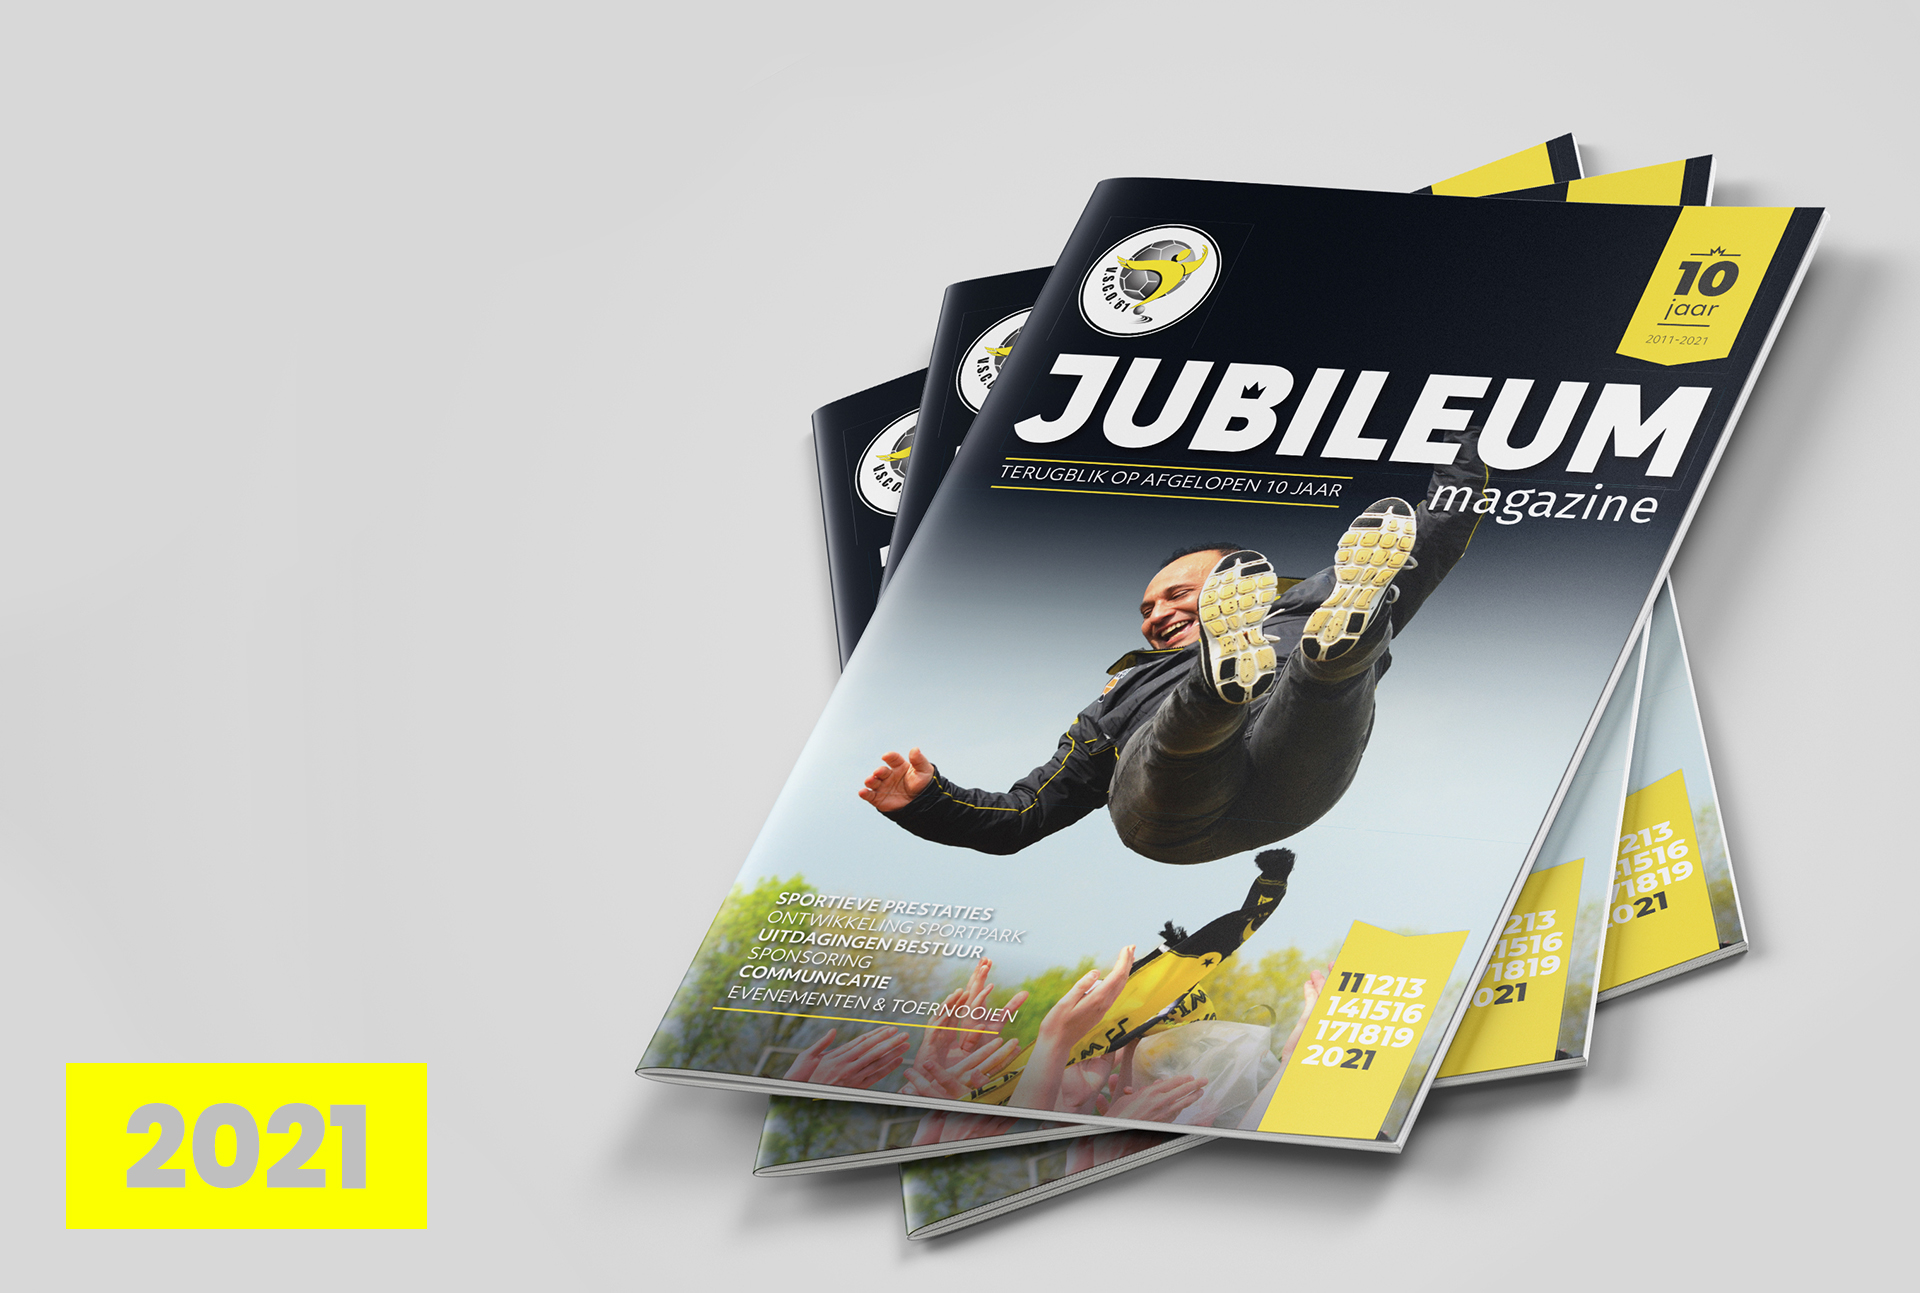 Jubileum magazine